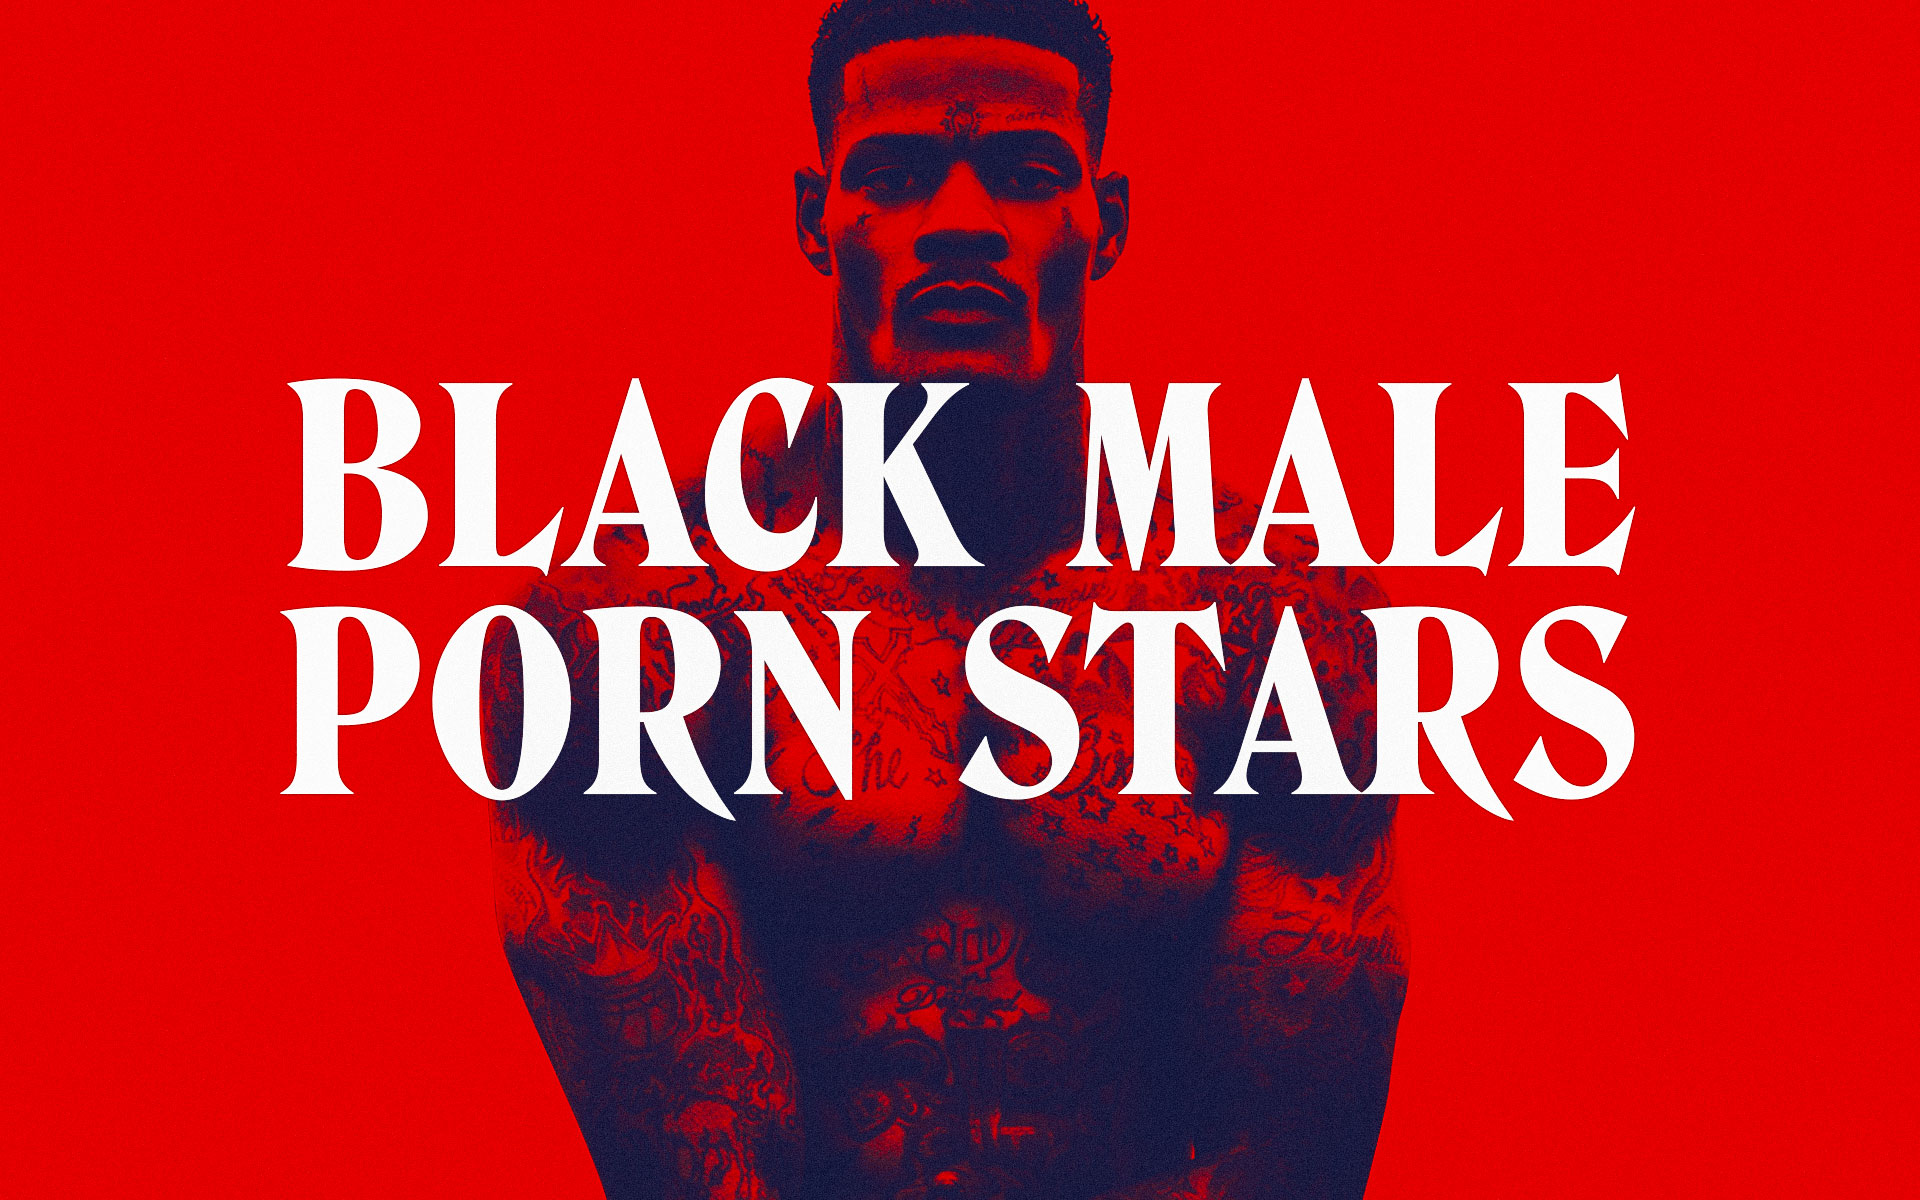 Black Porn Star Emotion - Hottest Black Male Porn Stars | Filthy